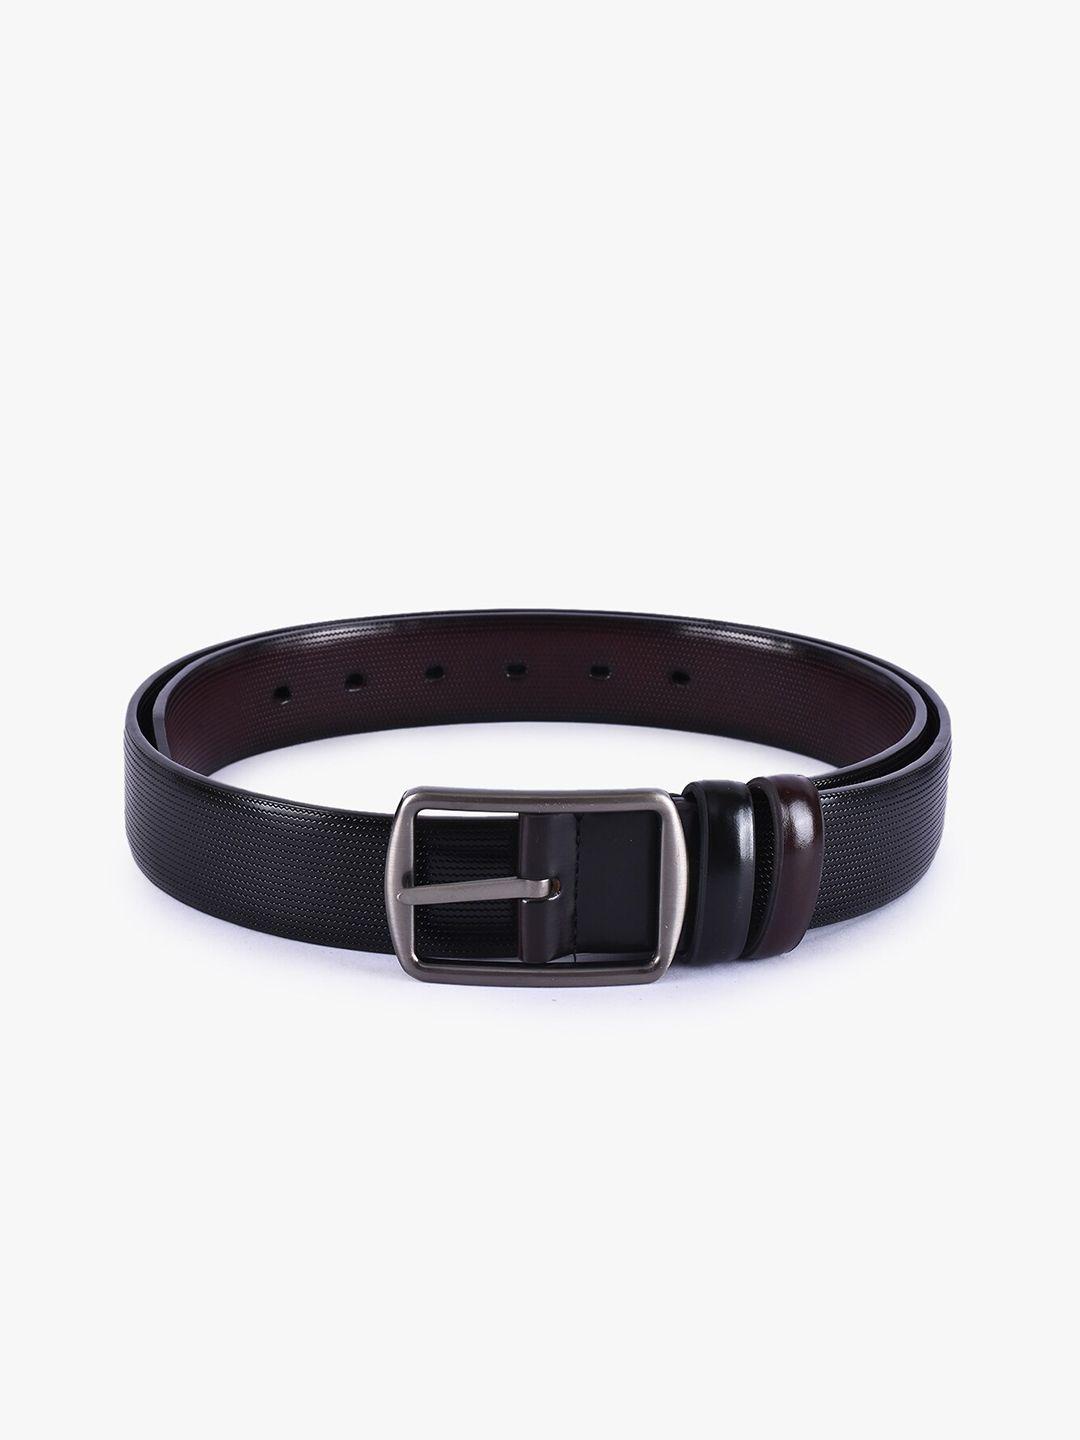 buckleup-men-black-textured-leather-reversible-formal-belt